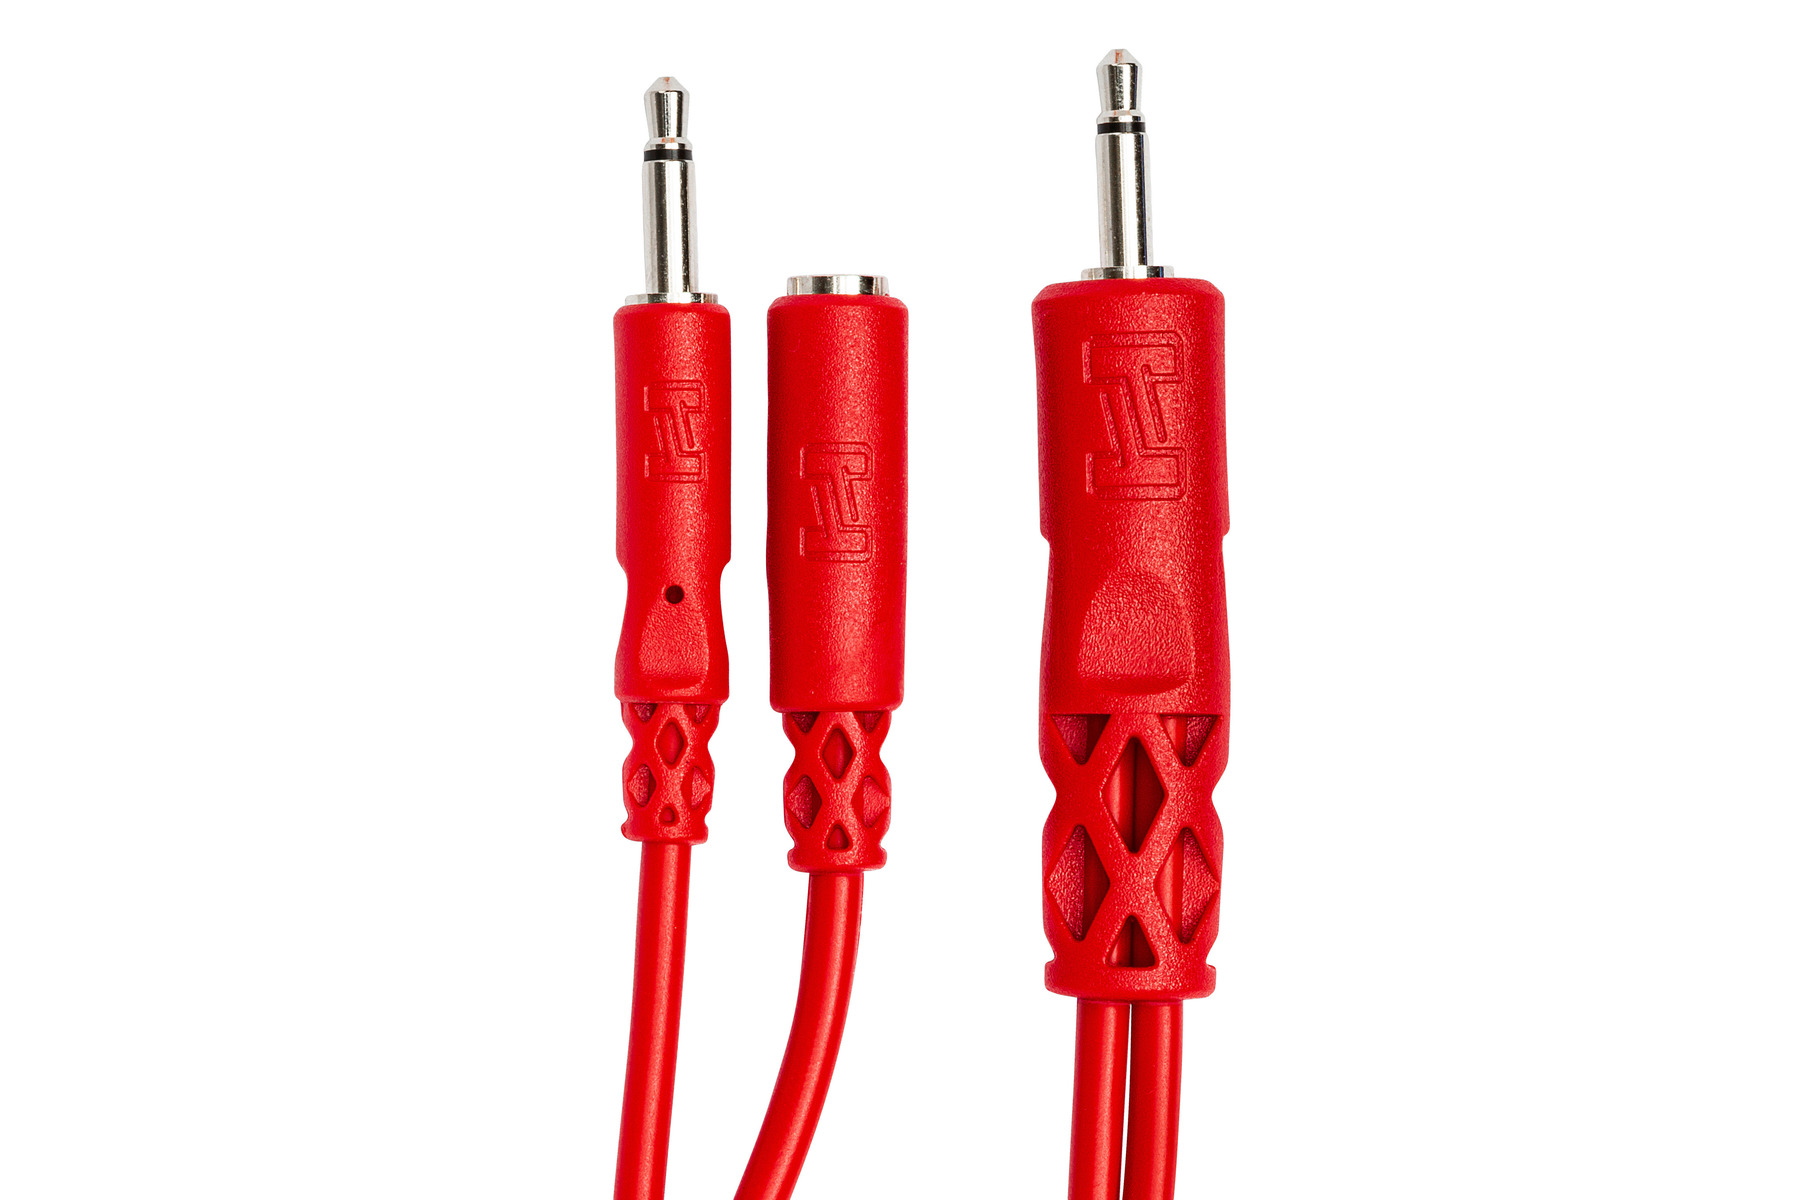 Cache Cable 2 Pack, Flexible Range Câble Mosotech 2x1.5M PE Câble